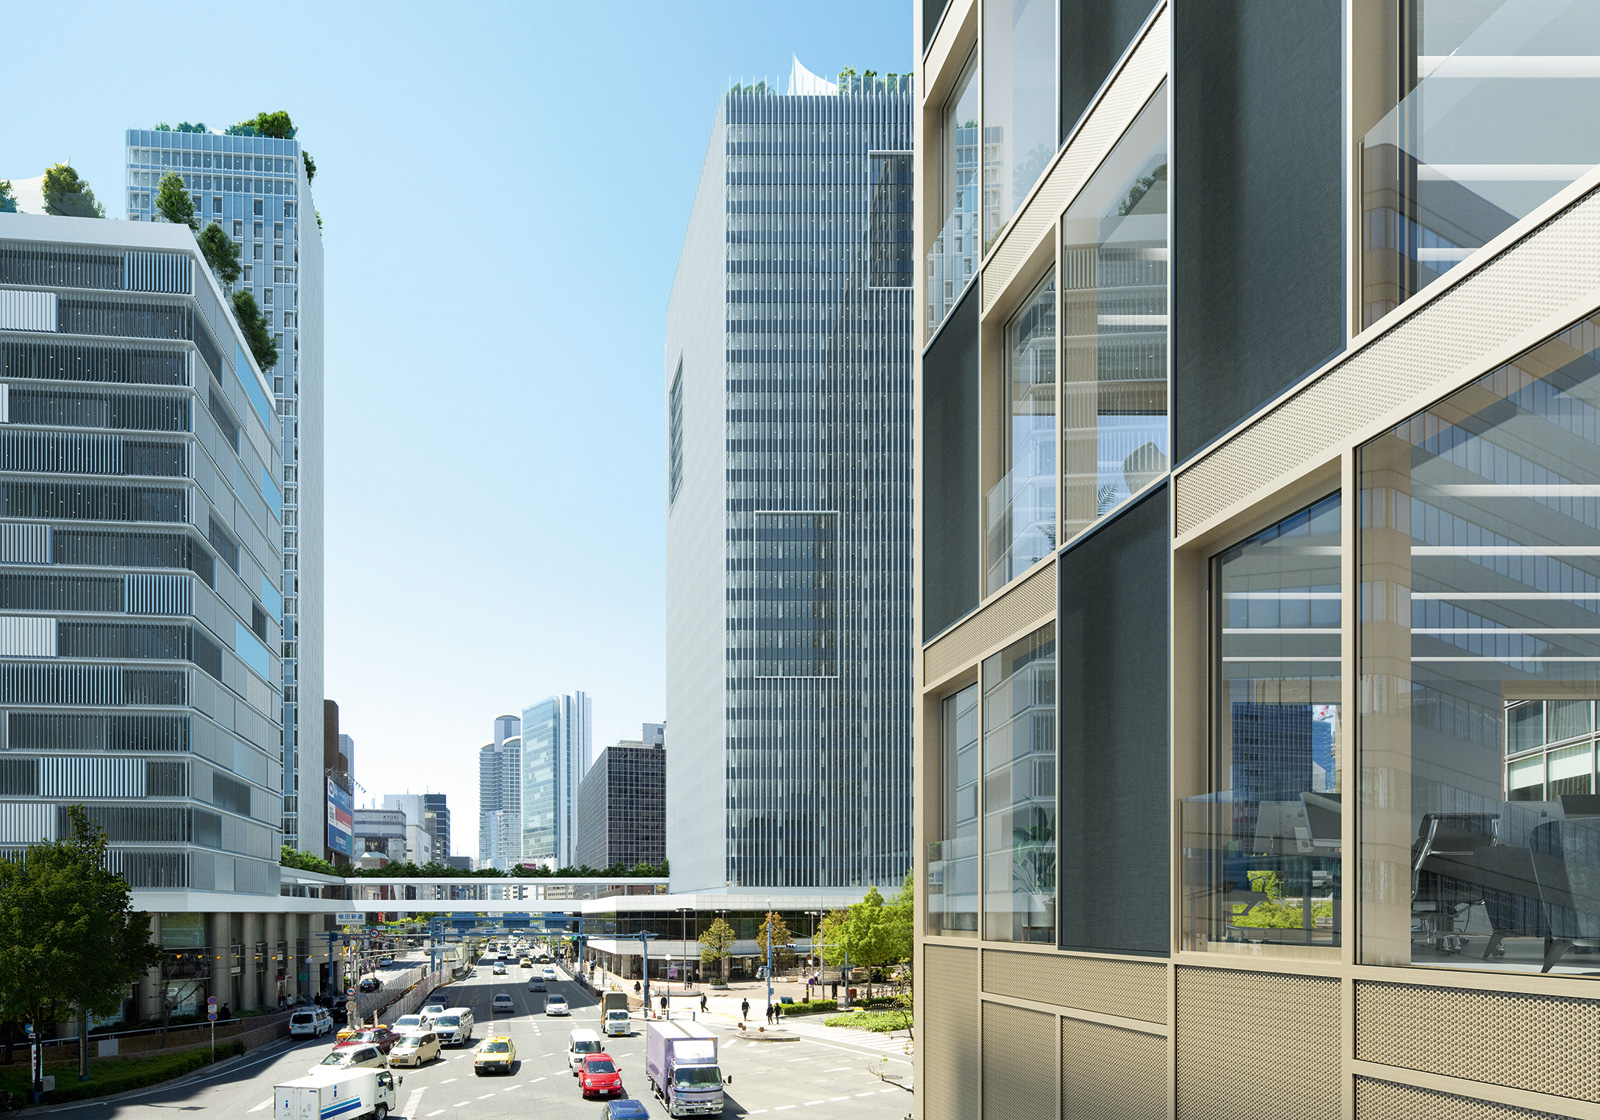 Schüco prototyp predstavený počas BAU 2019 Vonkajšie fasády pohlcujúce zvuk môžu významne prispieť k zníženiu šírenia hluku v mestských priestoroch.